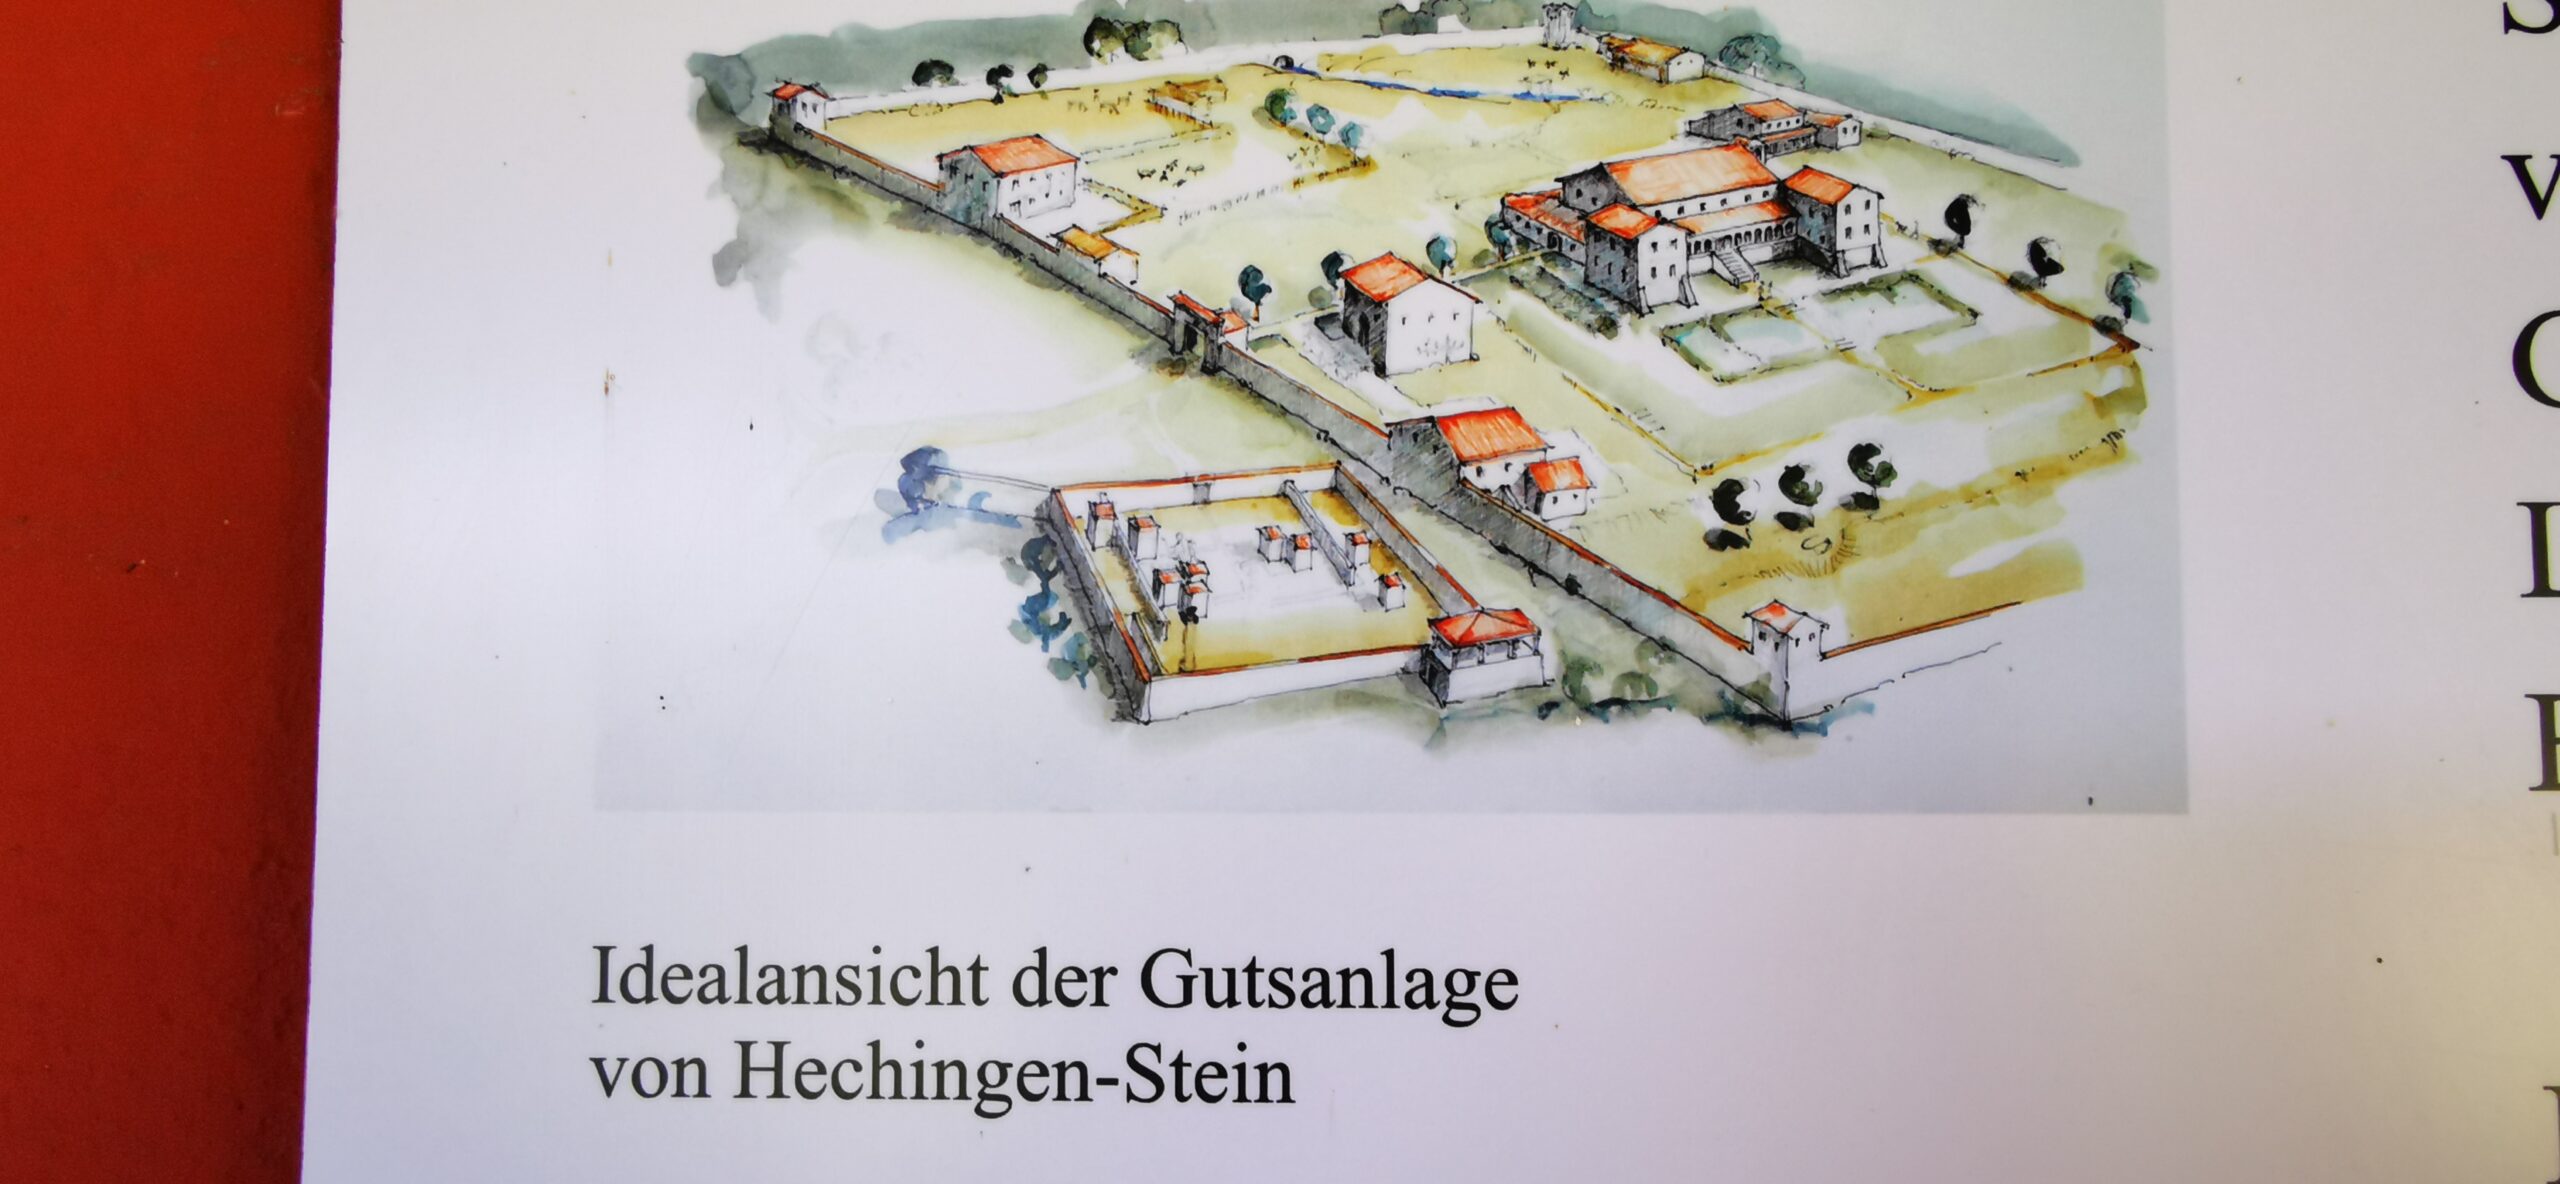 Römische Gutsanlage Hechingen-Stein